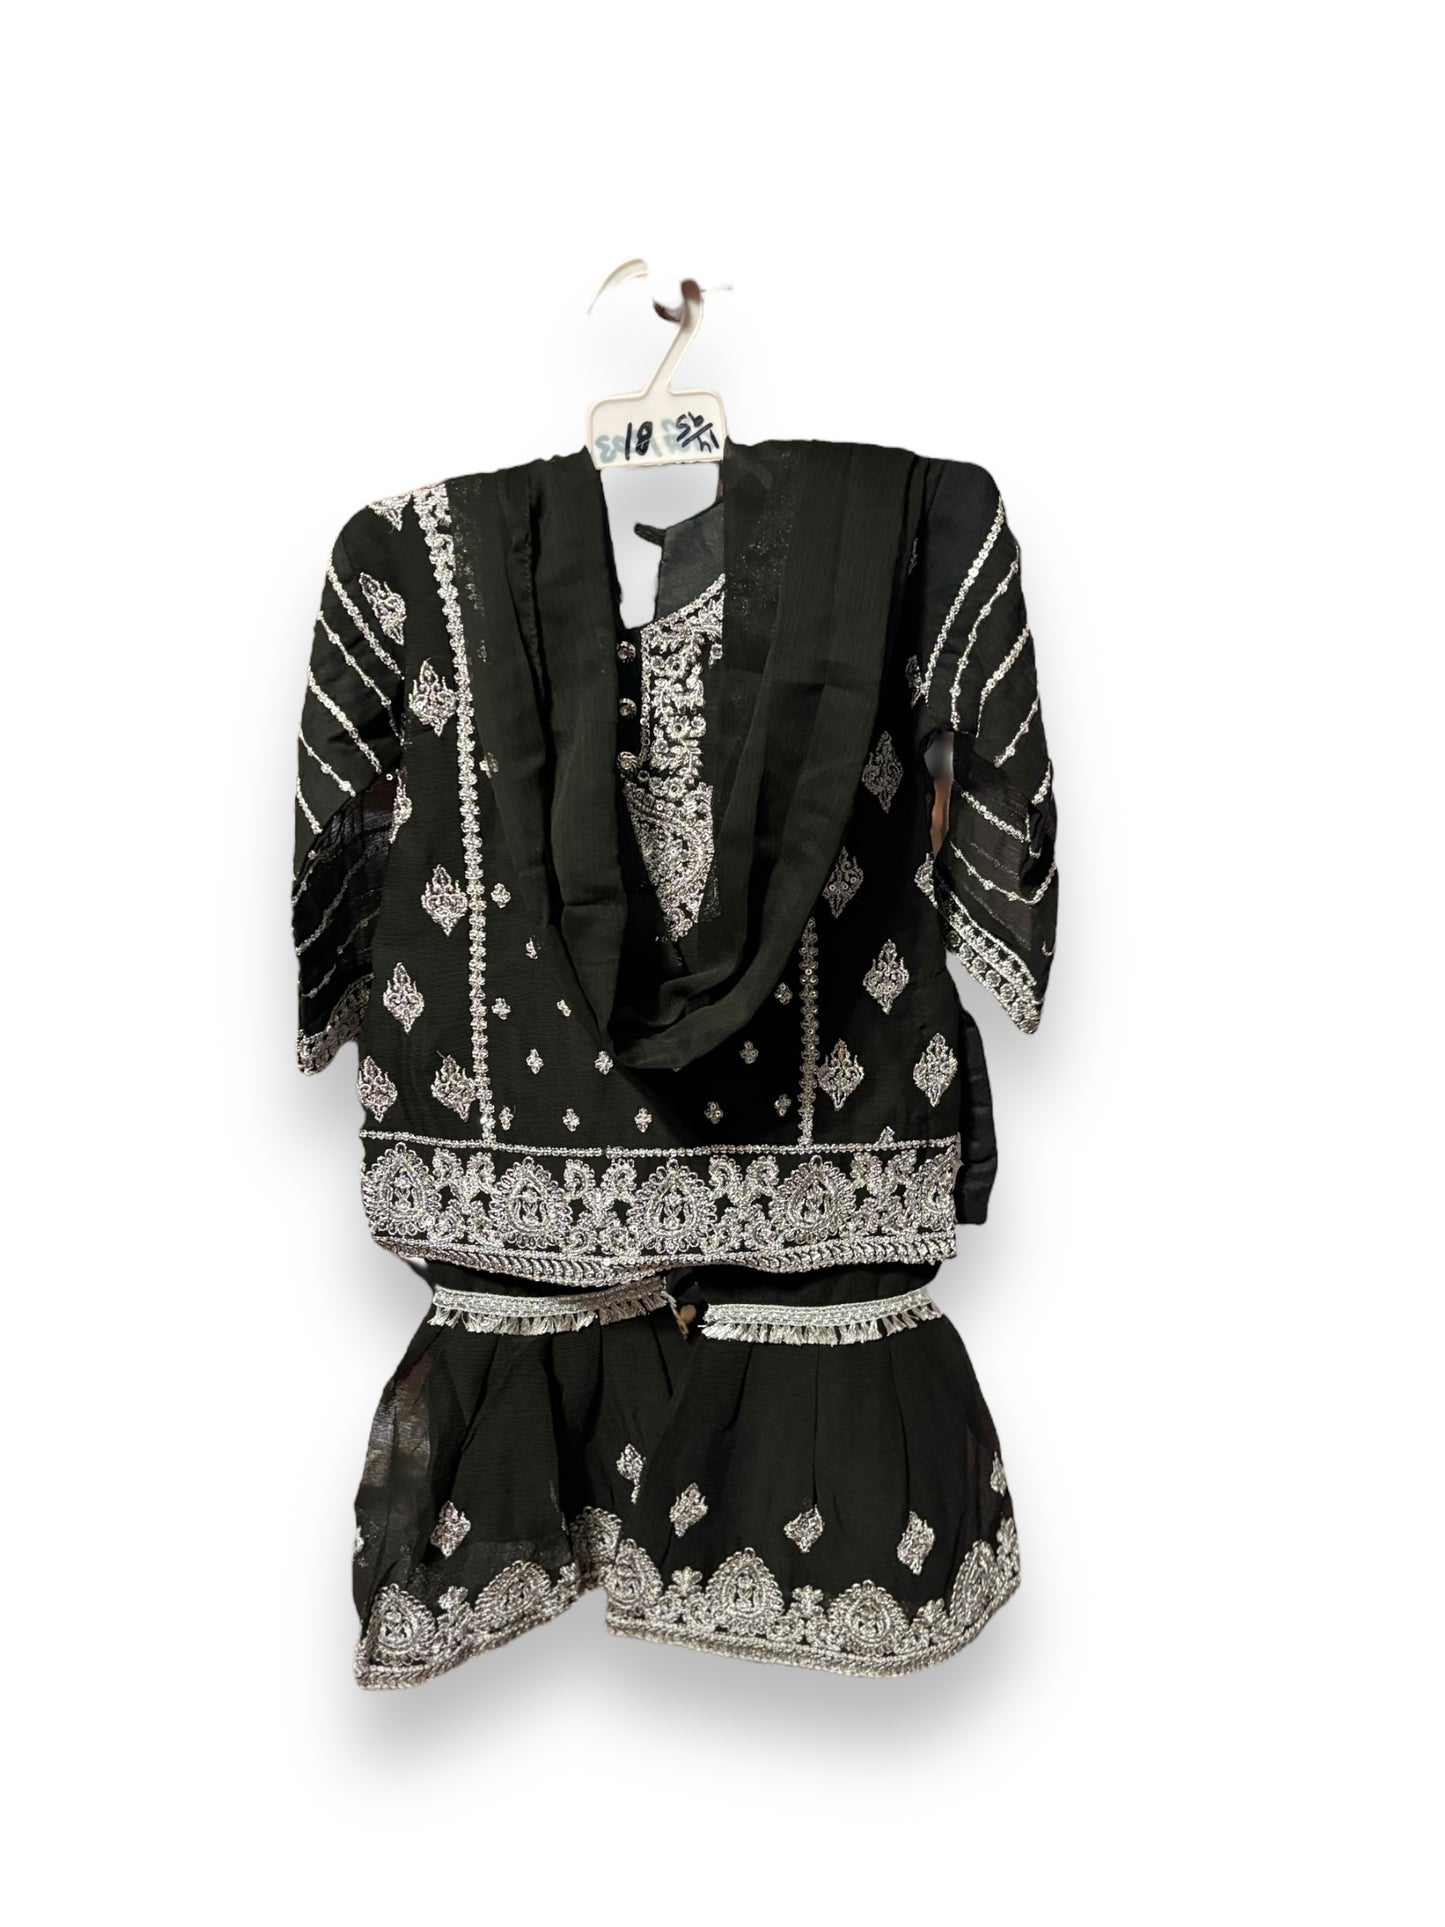 Designer Salwar Kameez for Little Girls - Elegant & Stylish Ethnic Wear-008